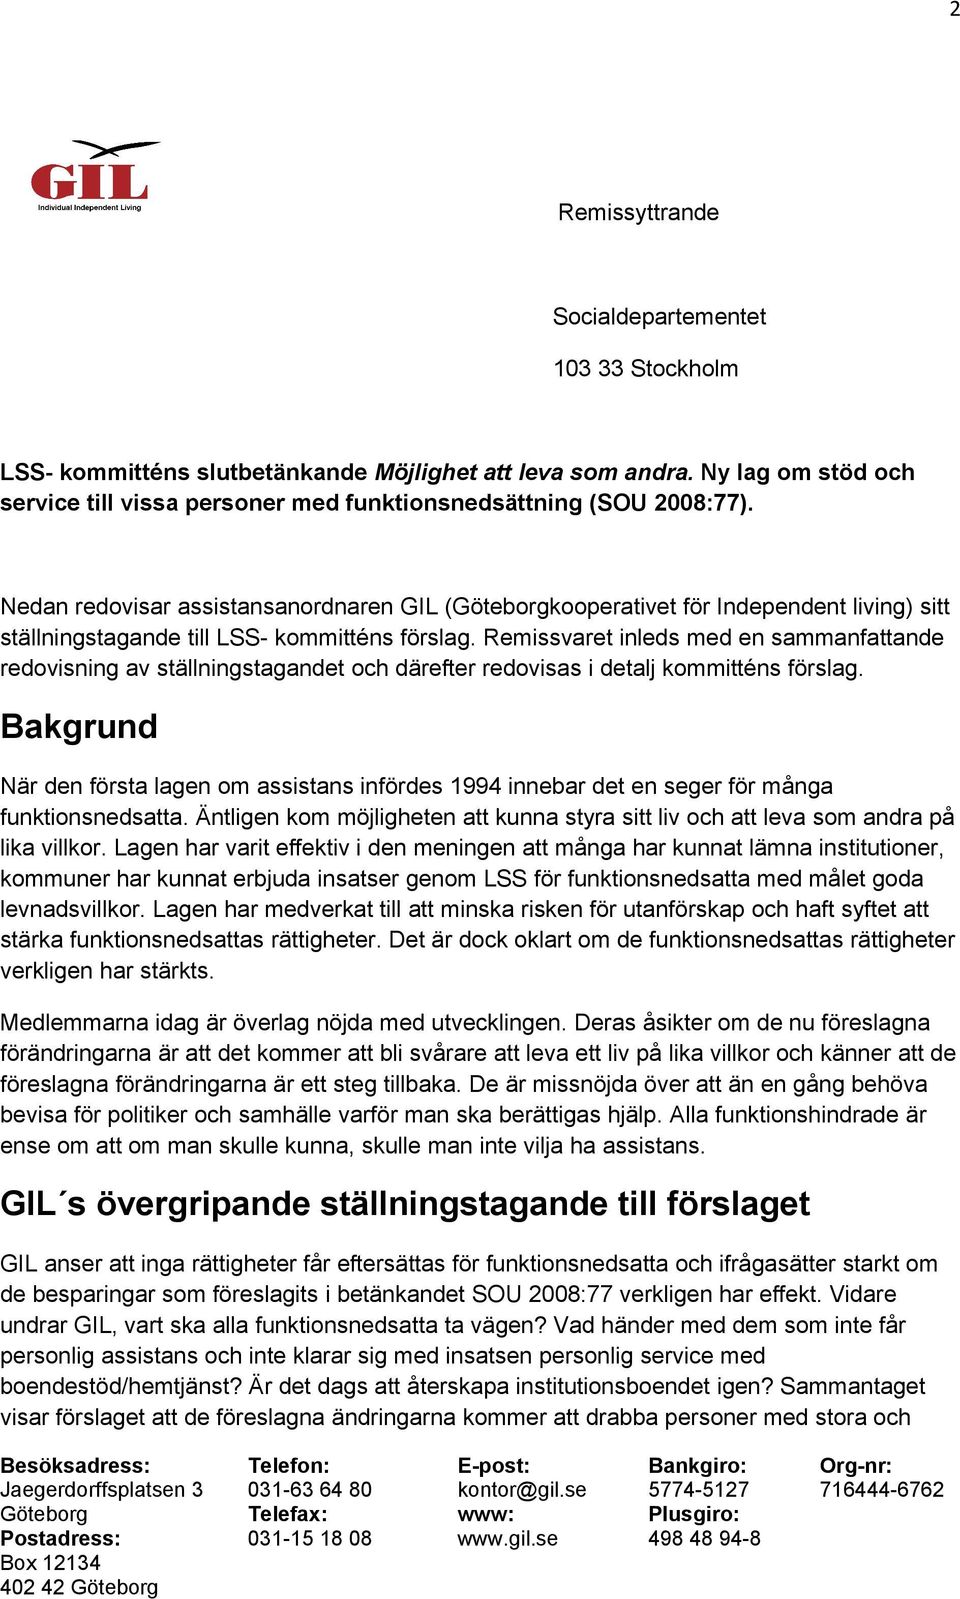 Nedan redovisar assistansanordnaren GIL (Göteborgkooperativet för Independent living) sitt ställningstagande till LSS- kommitténs förslag.